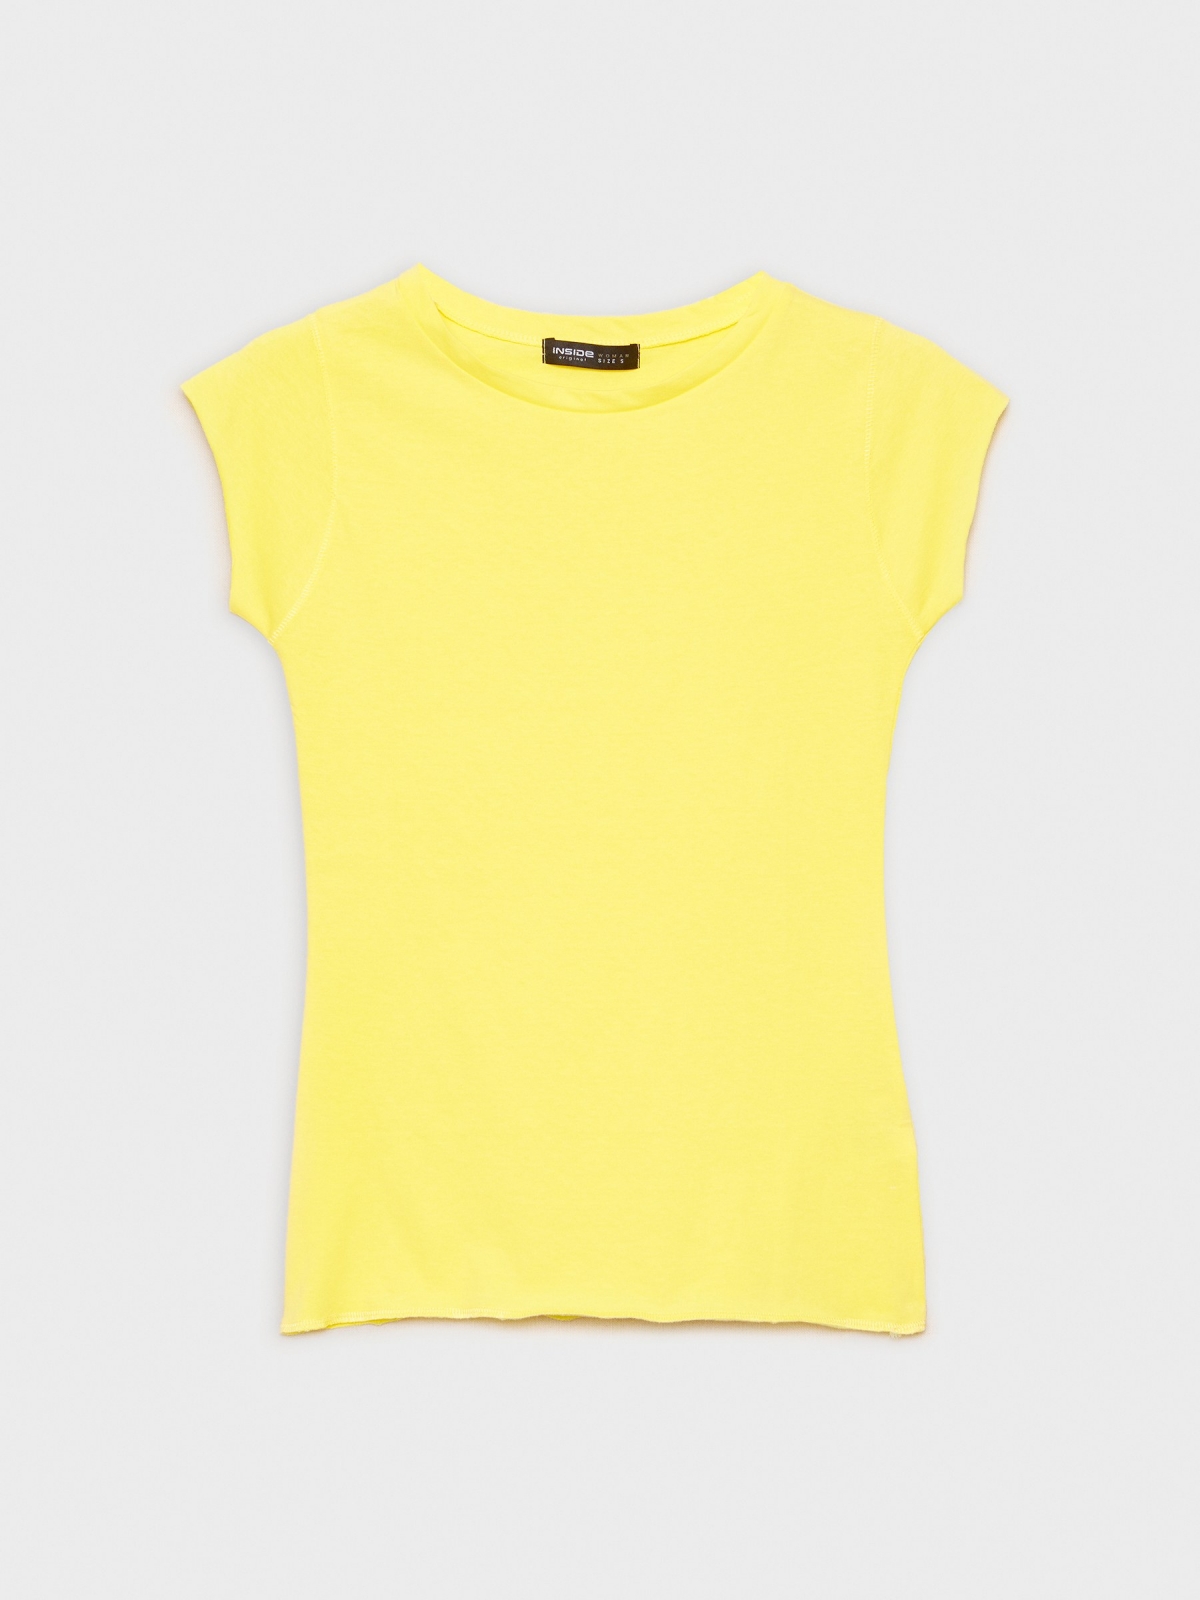  T-shirt básica de gola redonda amarelo